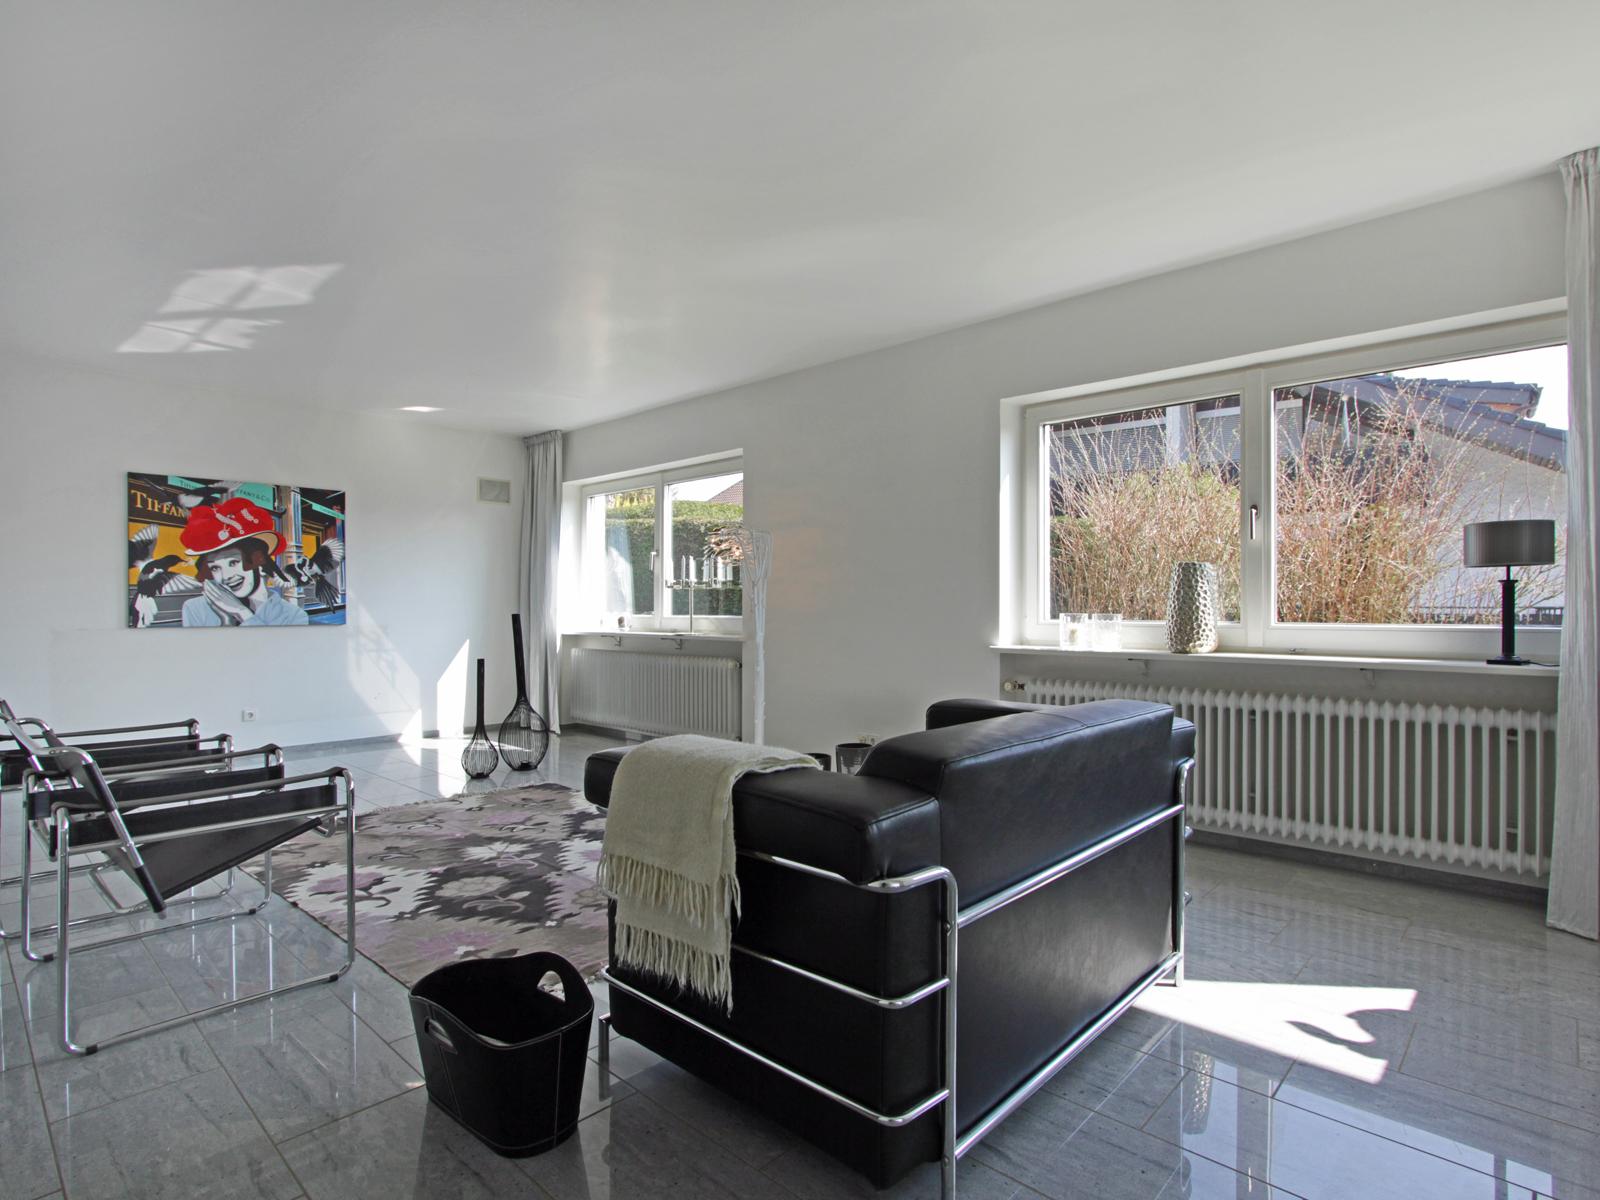 Wohnraumgestaltung #teppich #wohnzimmer #puristisch #heizung #tagesdecke ©Scheewe-Pfeil